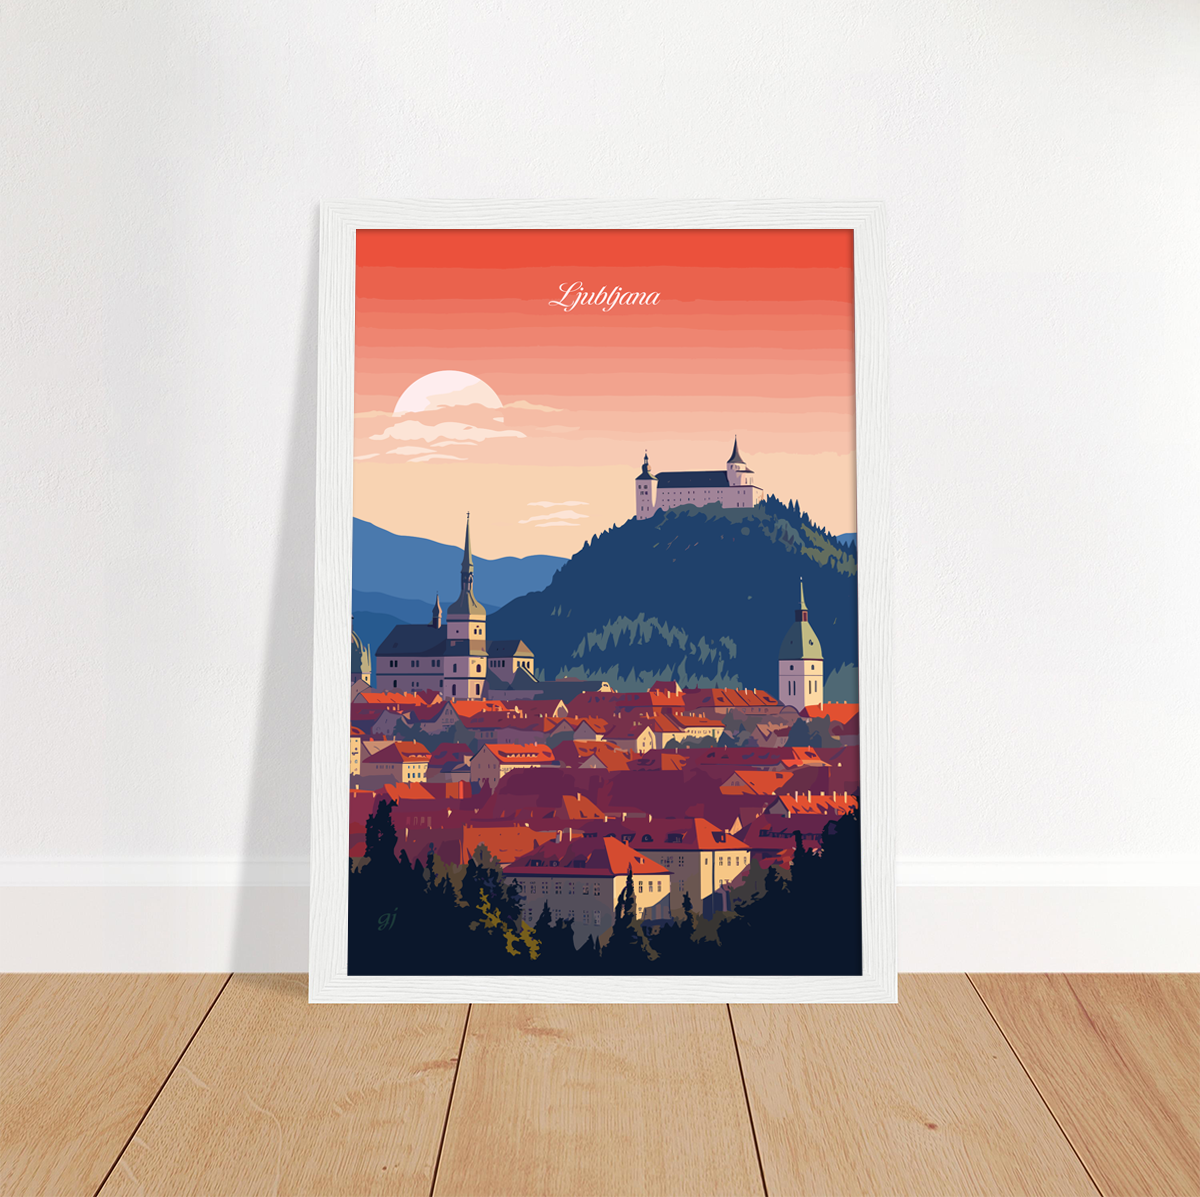 Ljubljana poster by bon voyage design